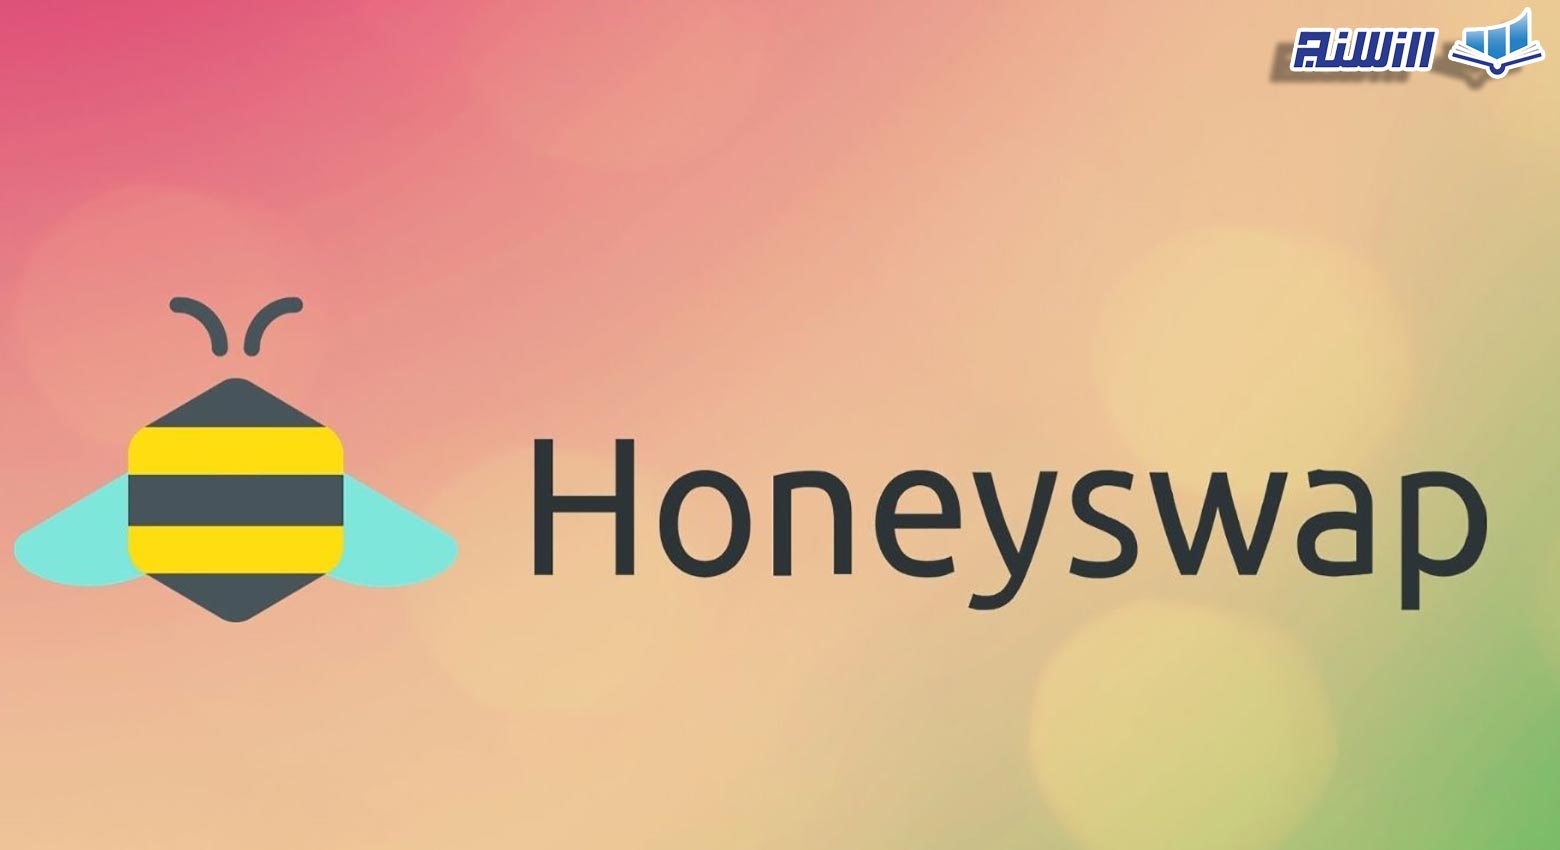 آموزش صرافی غیرمتمرکز هانی سواپ HoneySwap (نحوه کار با پلتفرم هانی سواپ)